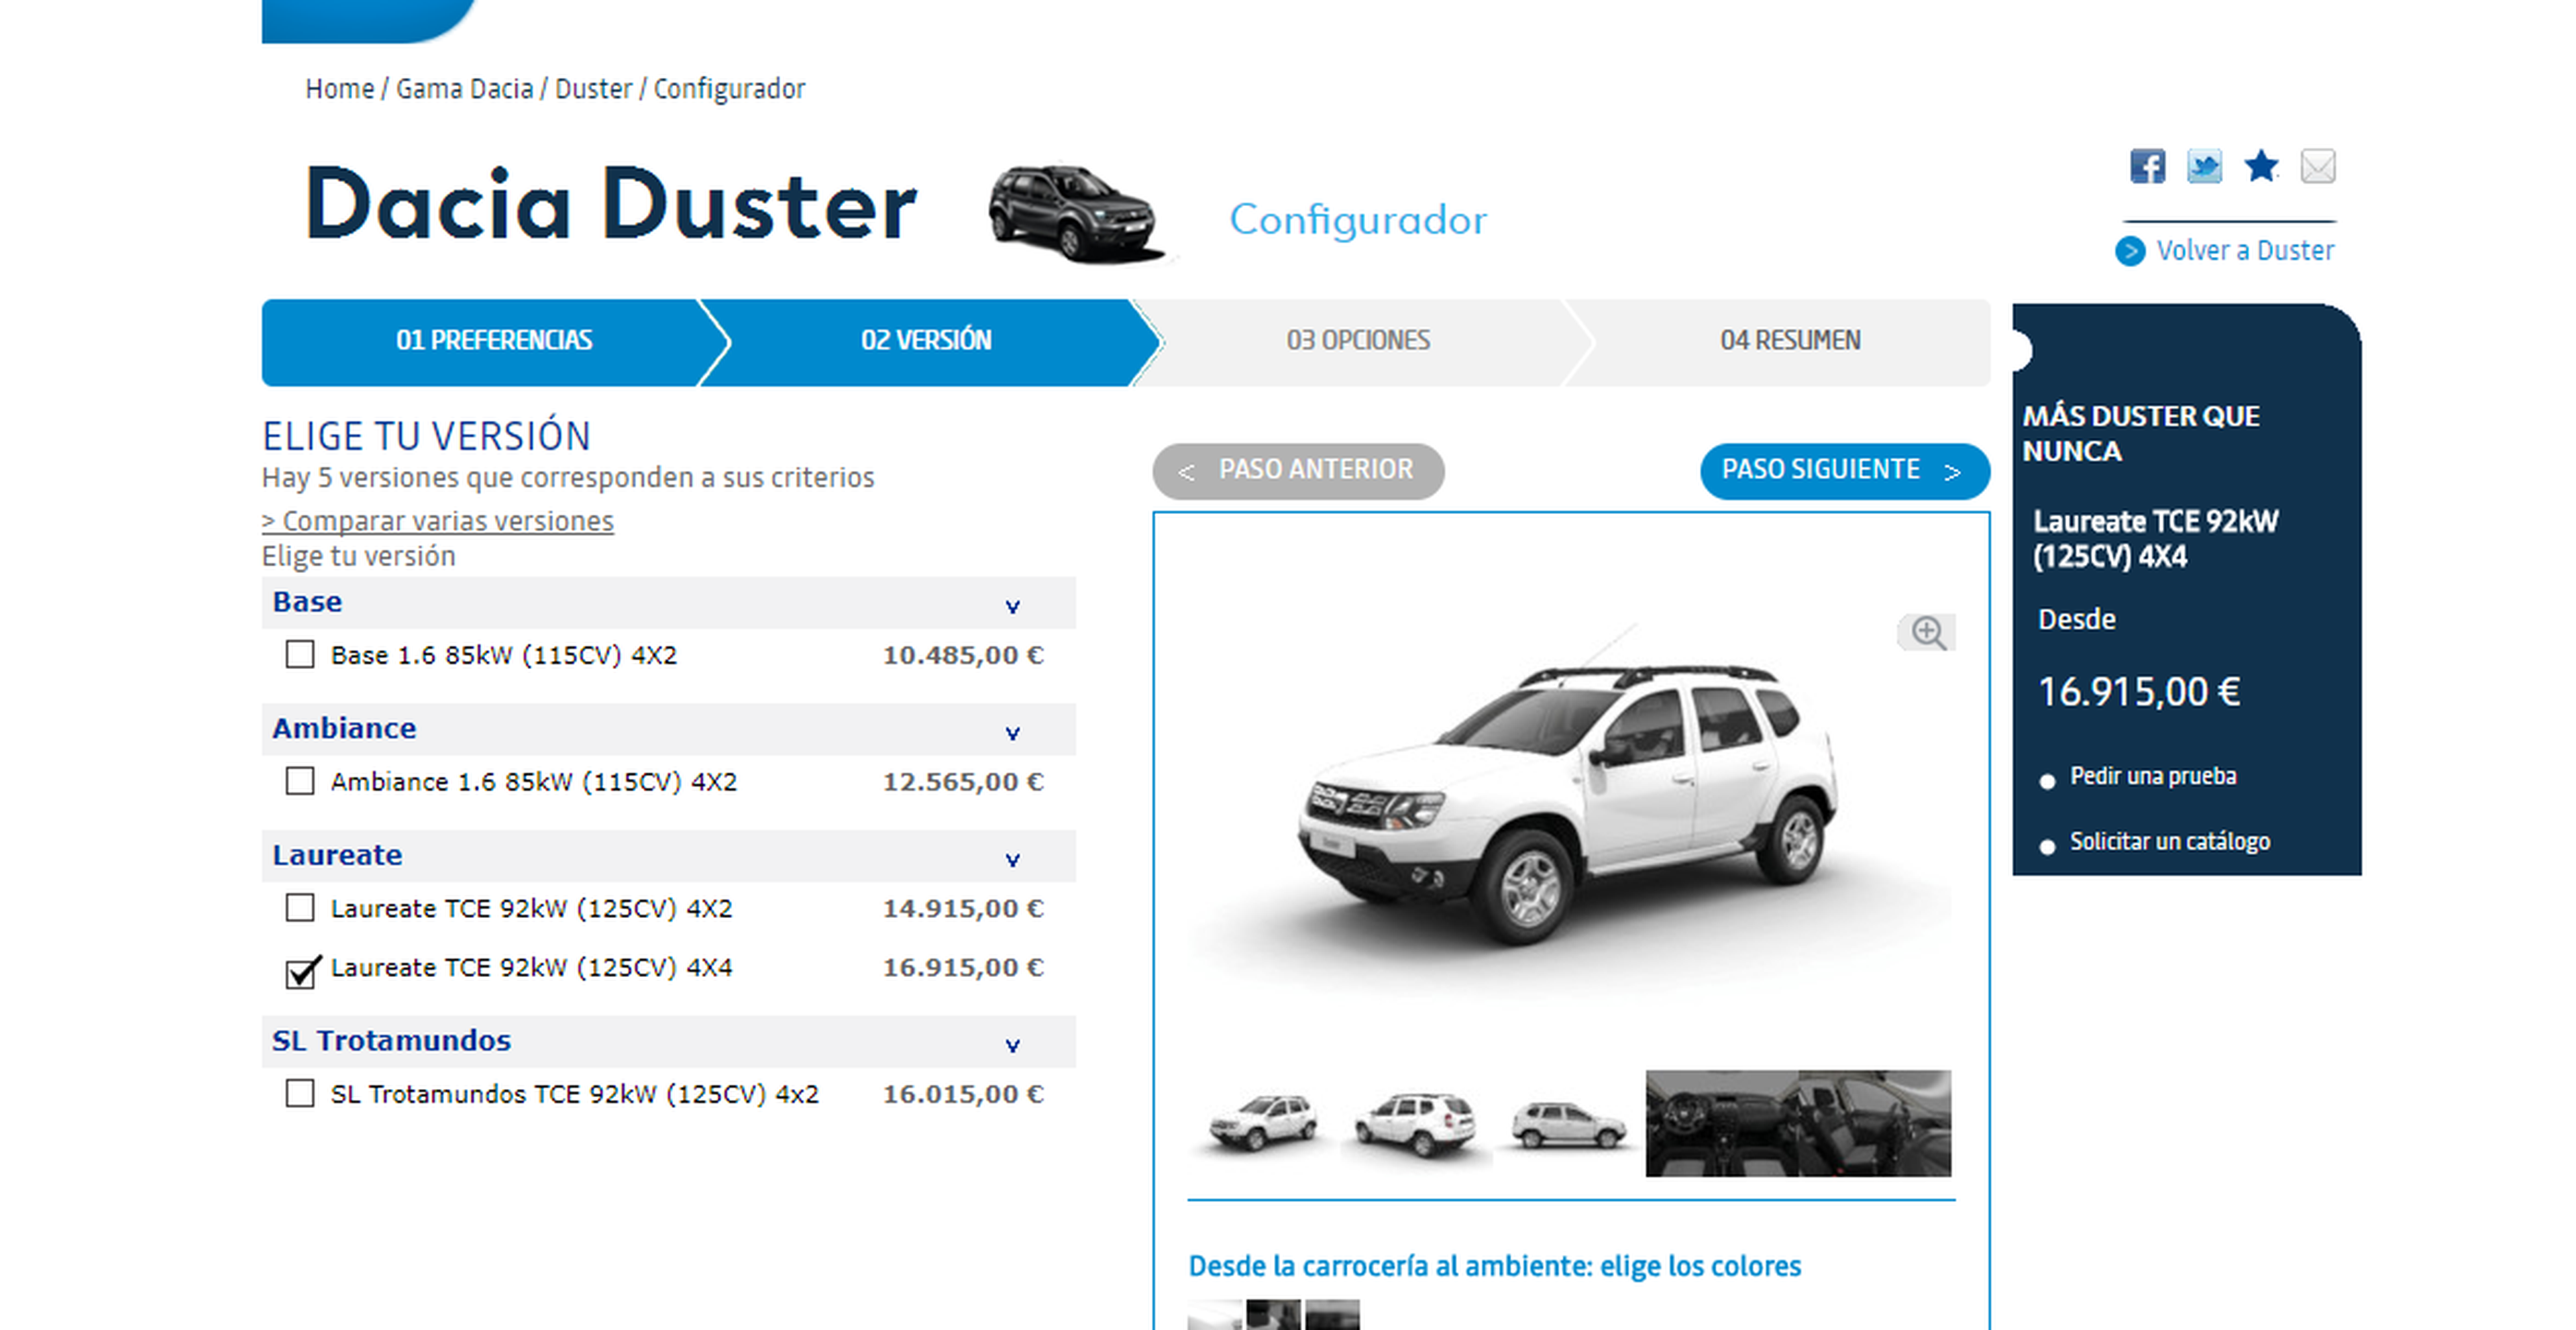 Configurador Dacia Duster